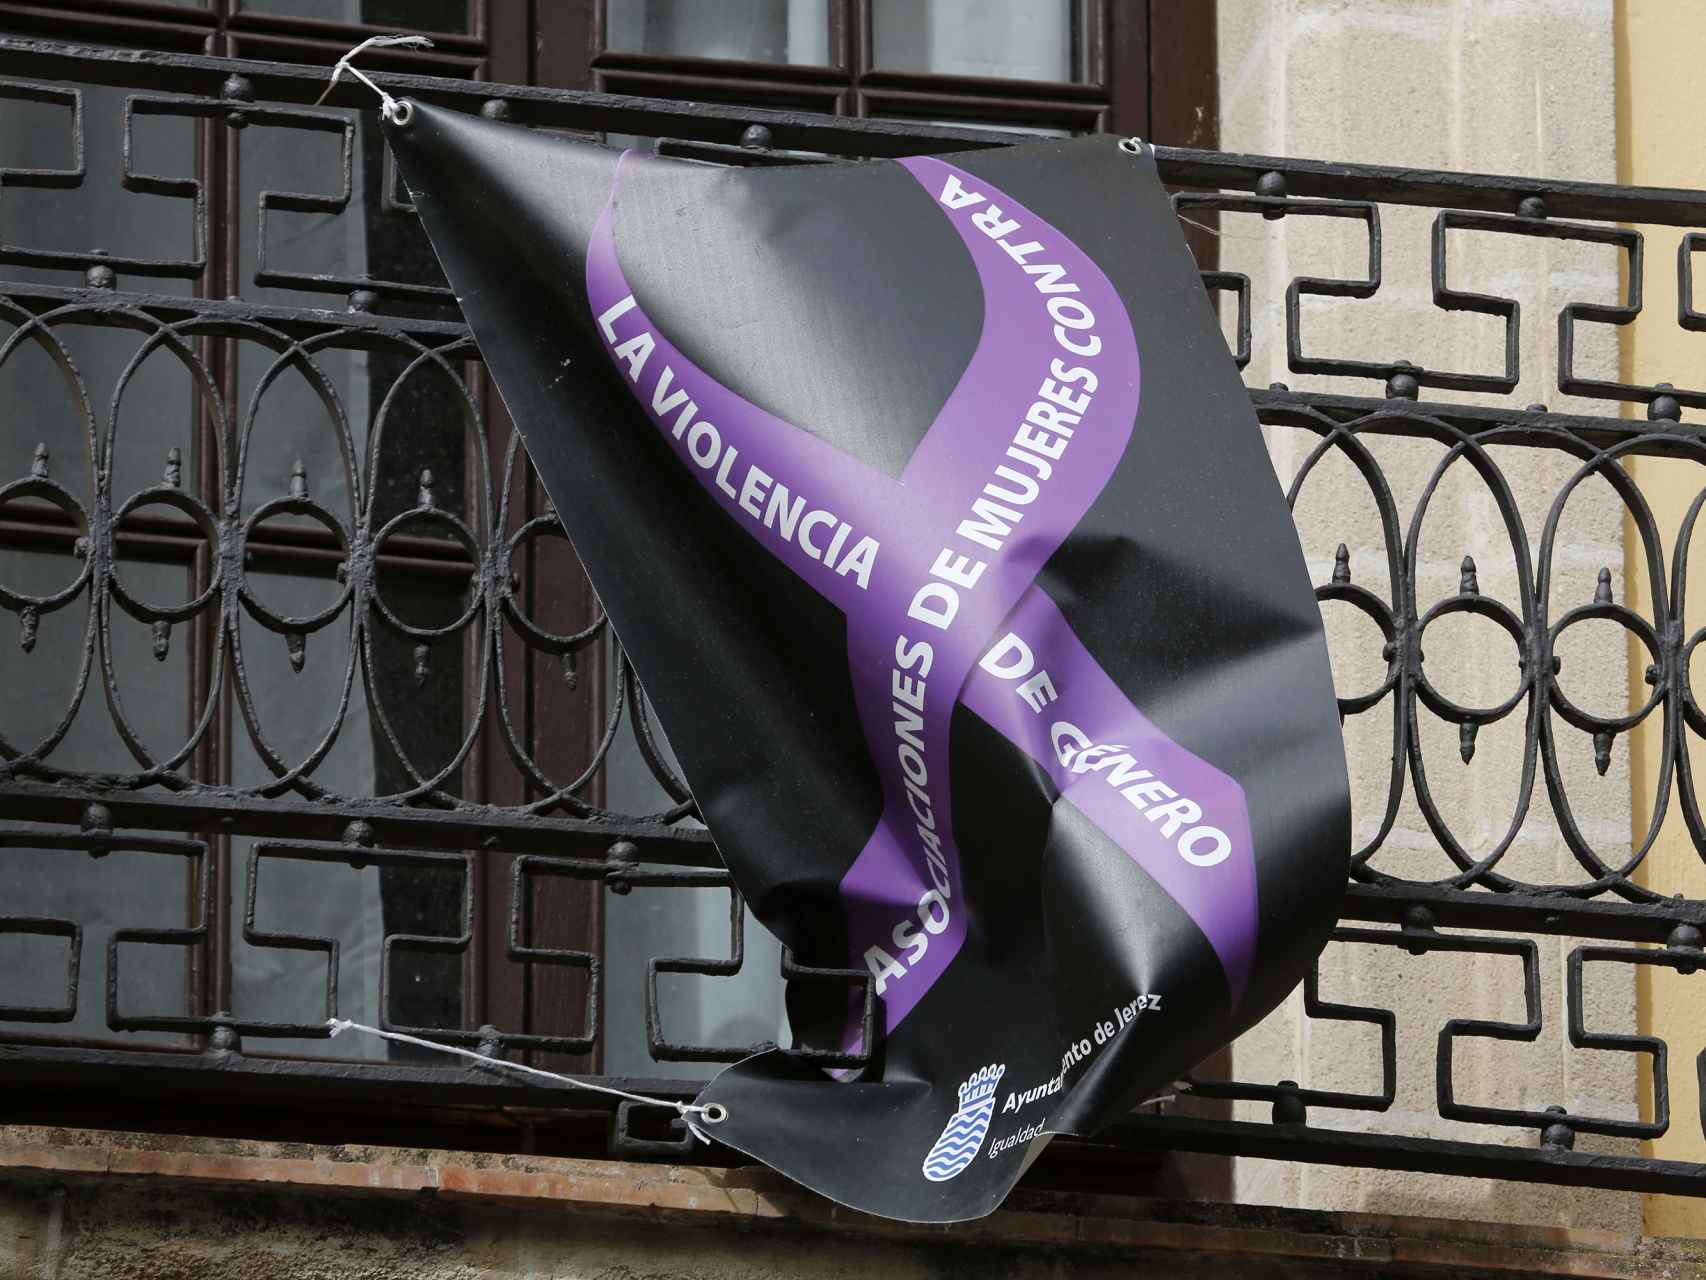 Una pancarta contra el maltrato de género colgada del ayuntamiento de Jerez, desde el último episodio de violencia machista que vivió la ciudad y que aún permanece en el balcón del consistorio.